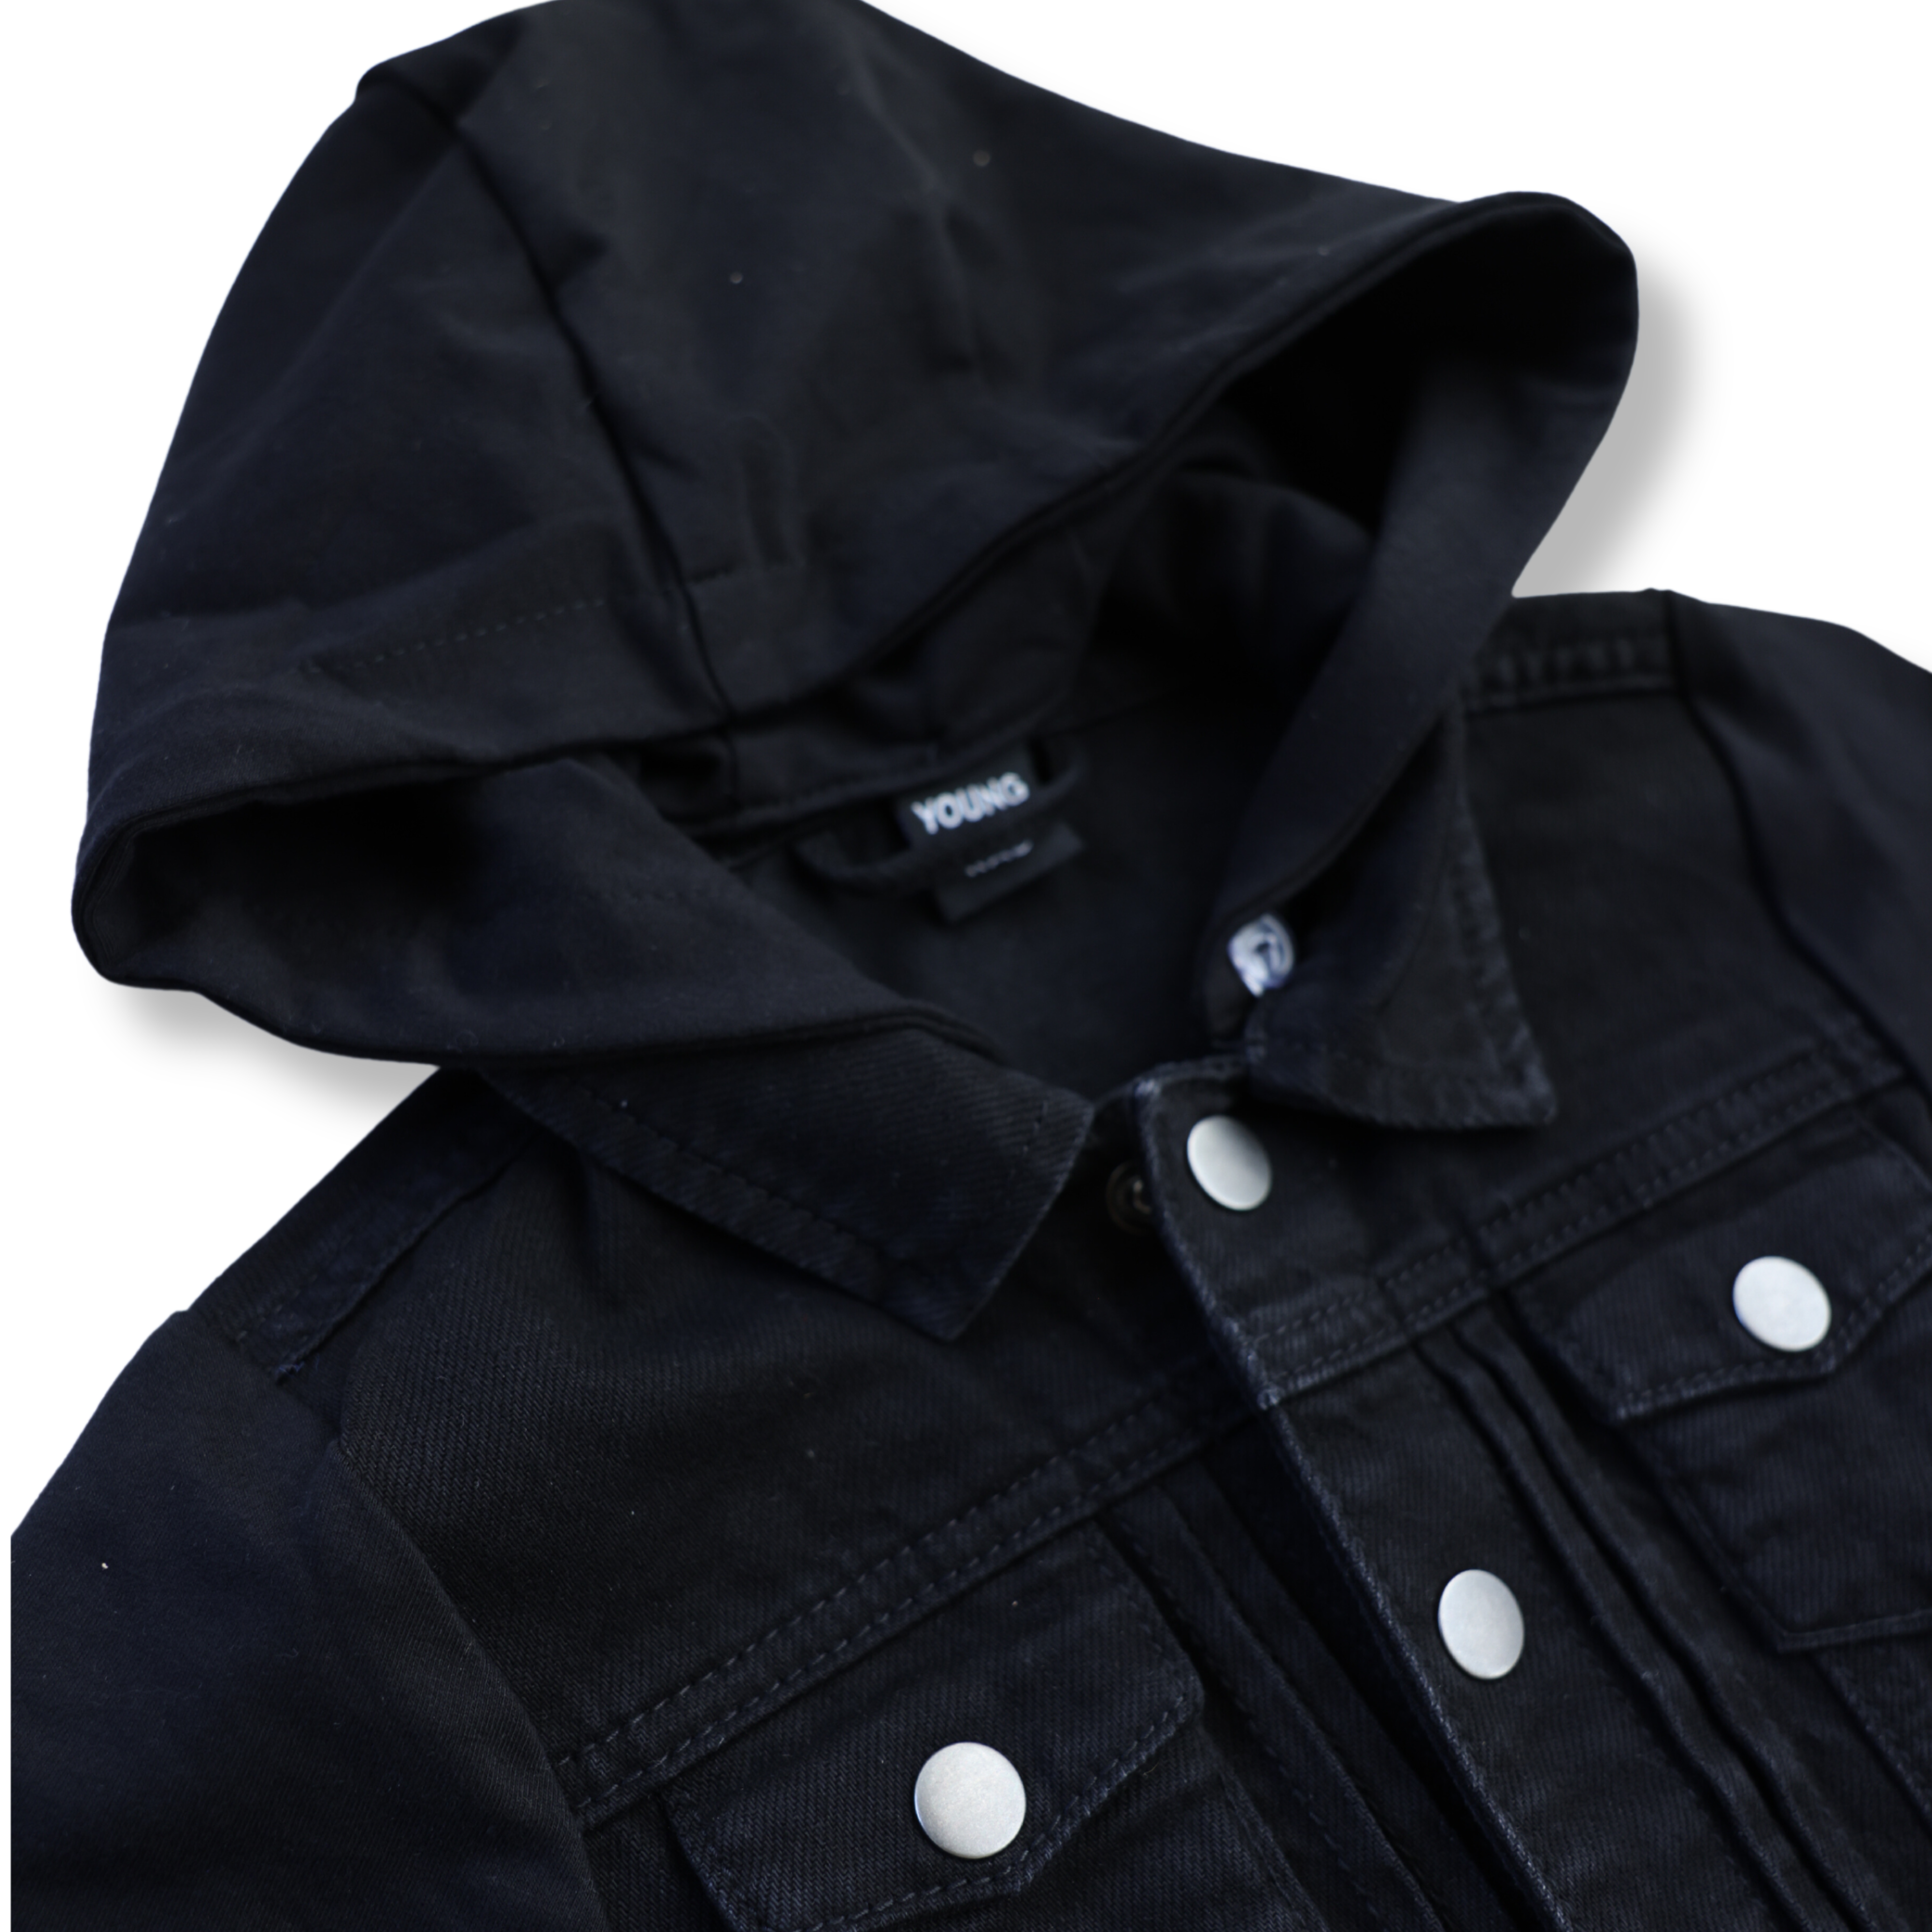 Black Hooded Jacket (Size Up)